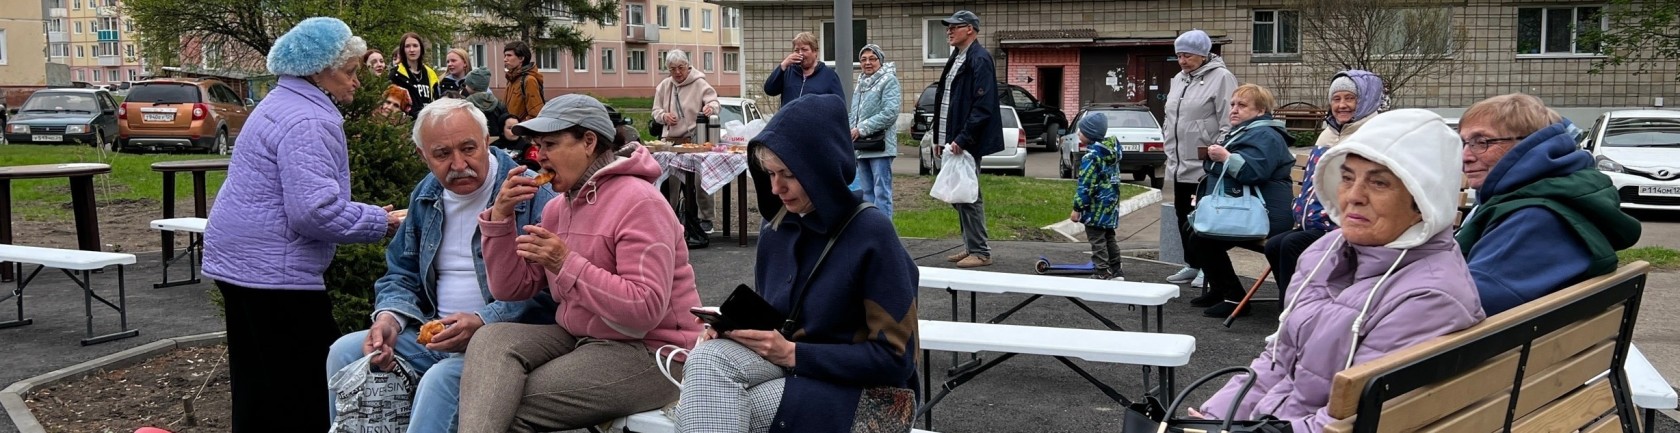 Общественники Зеленогорска организовали День соседей